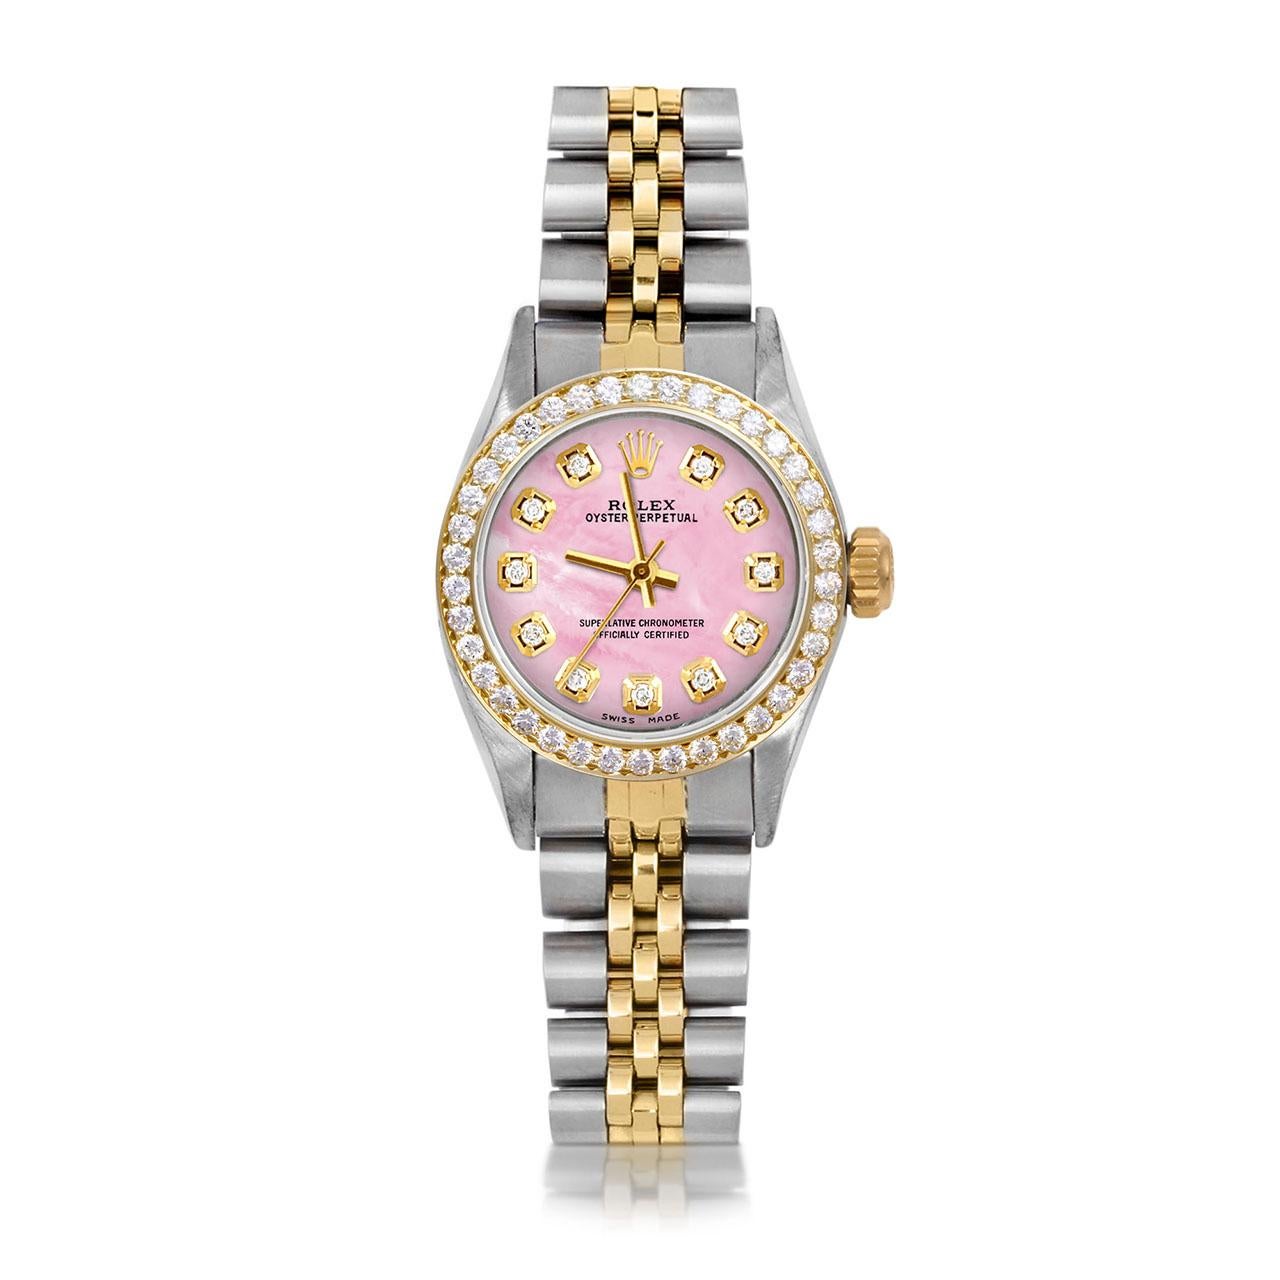 Perle Rolex Montre Oyster Perpetual TT rose avec cadran en diamants et lunette en diamants, pour femmes